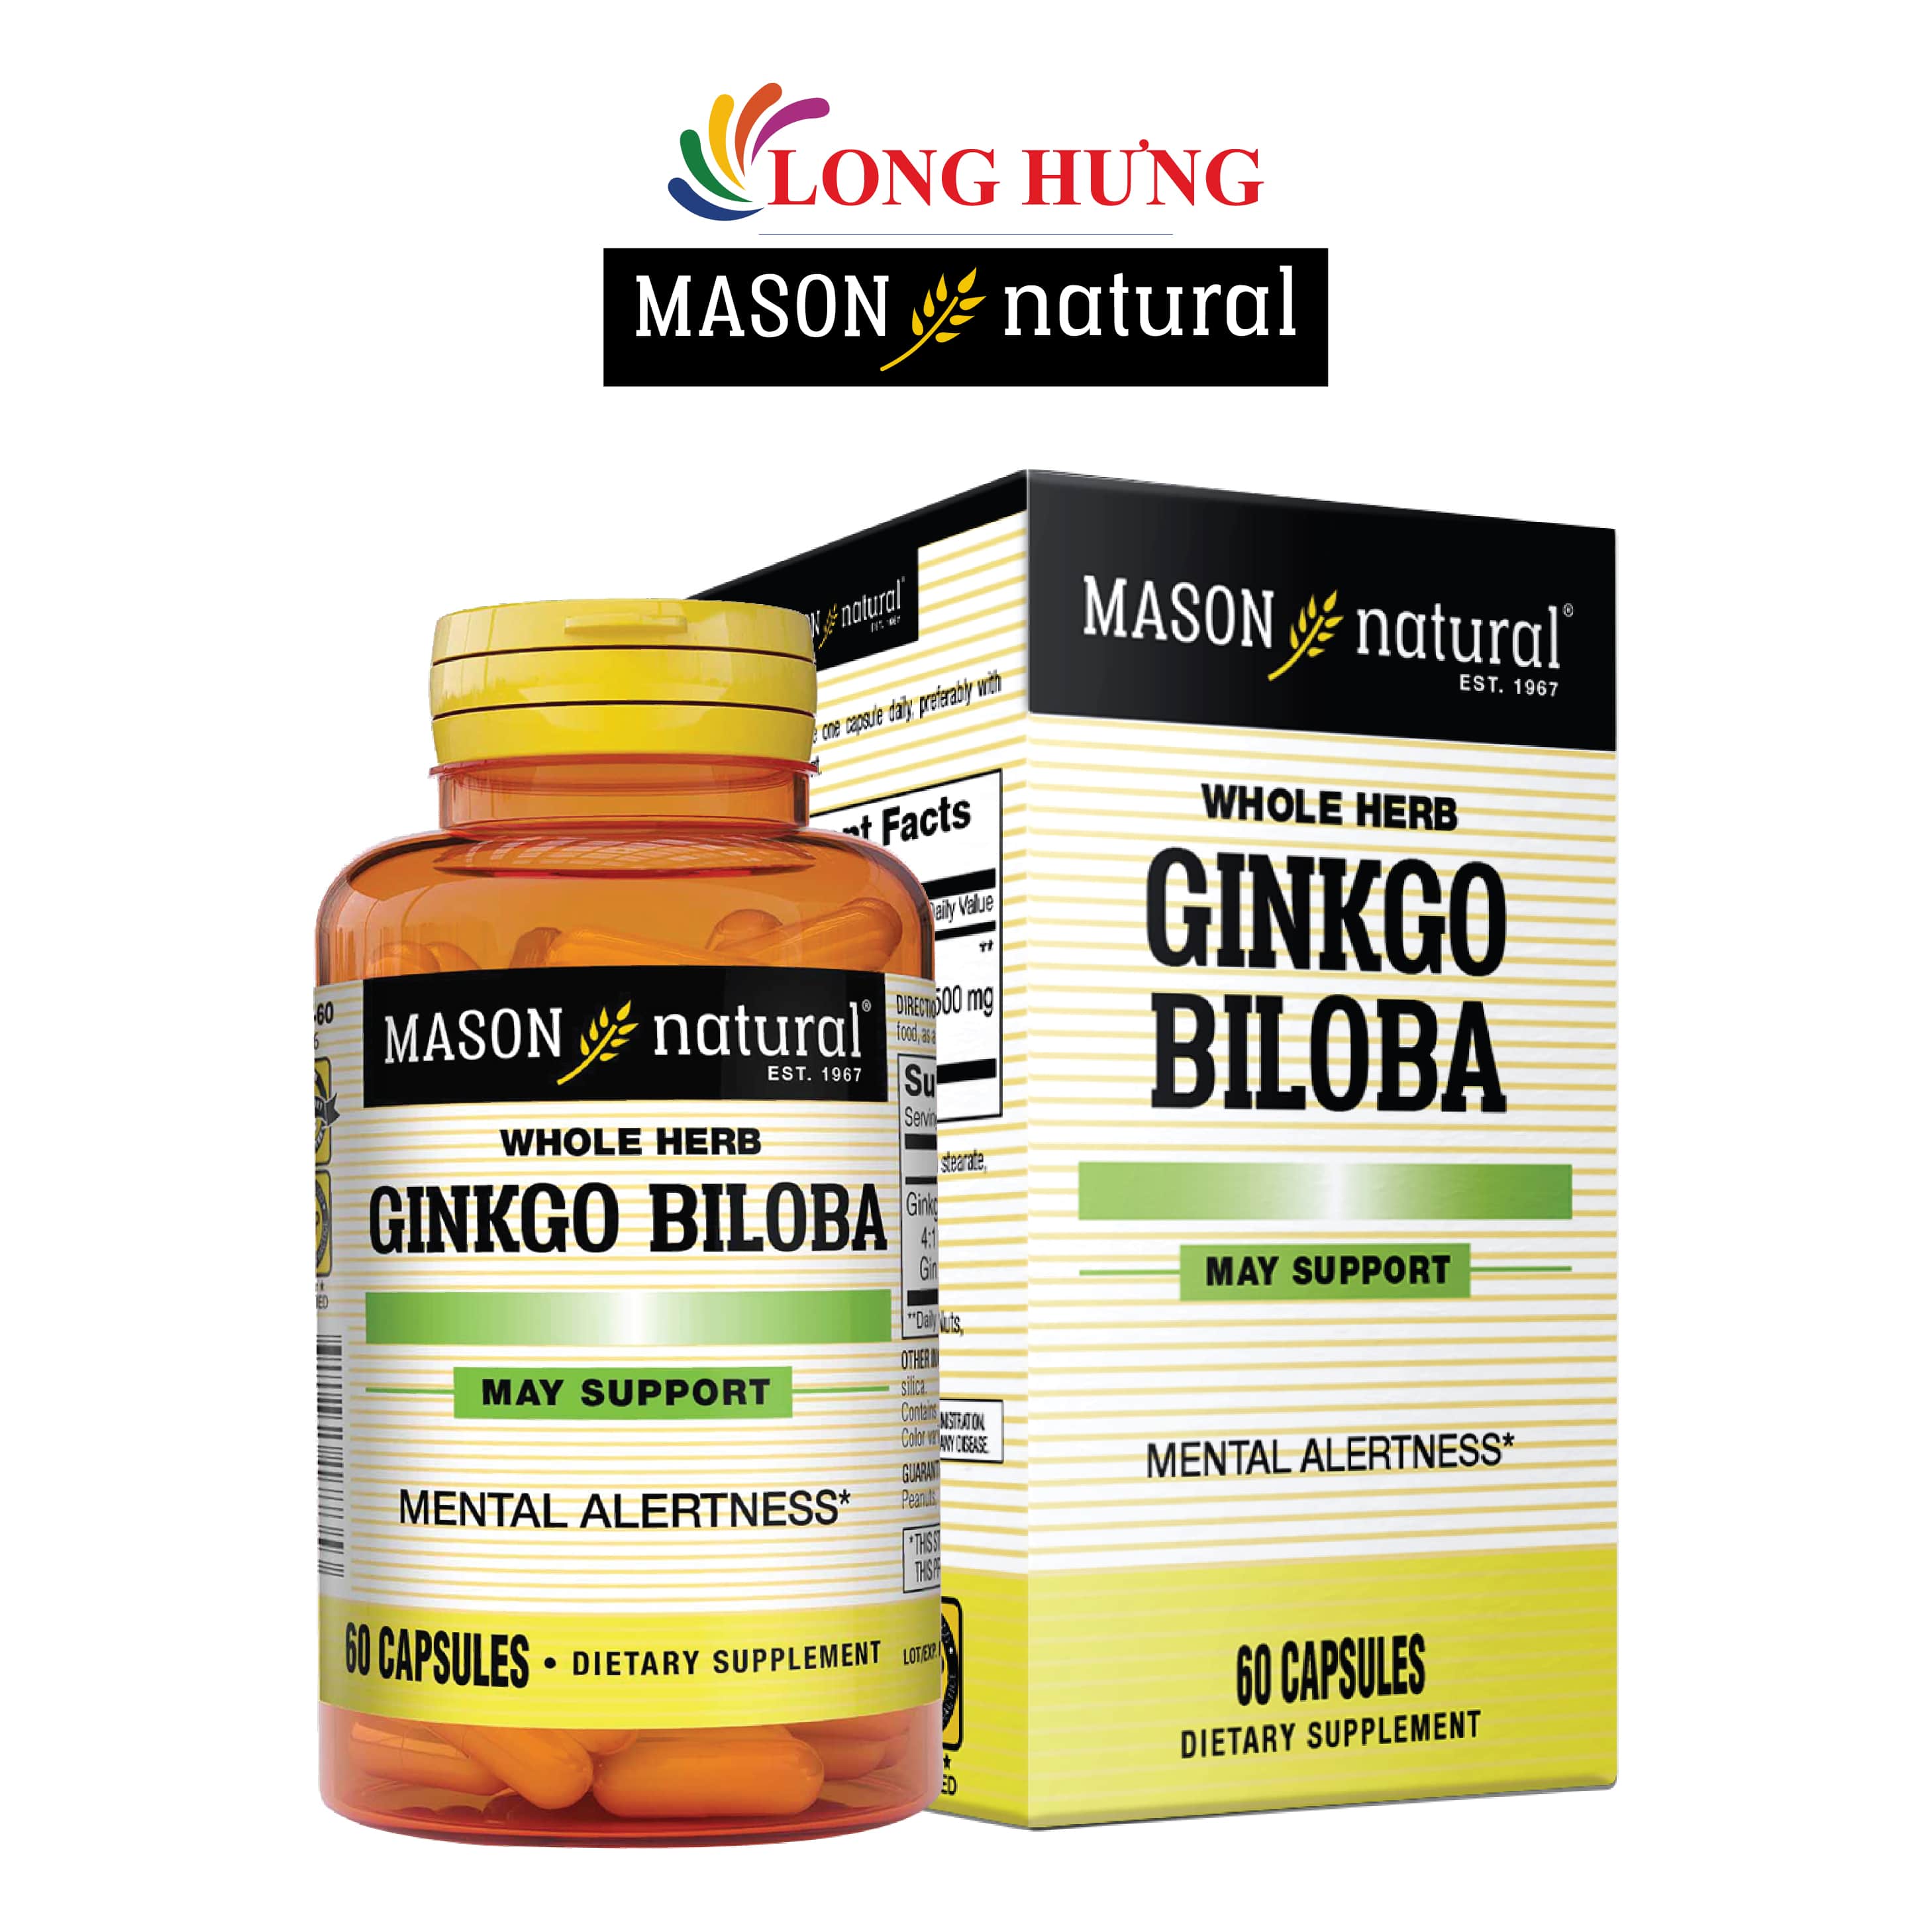 Viên uống Mason Natural Ginkgo Biloba hỗ trợ sức khỏe não bộ và hệ thần